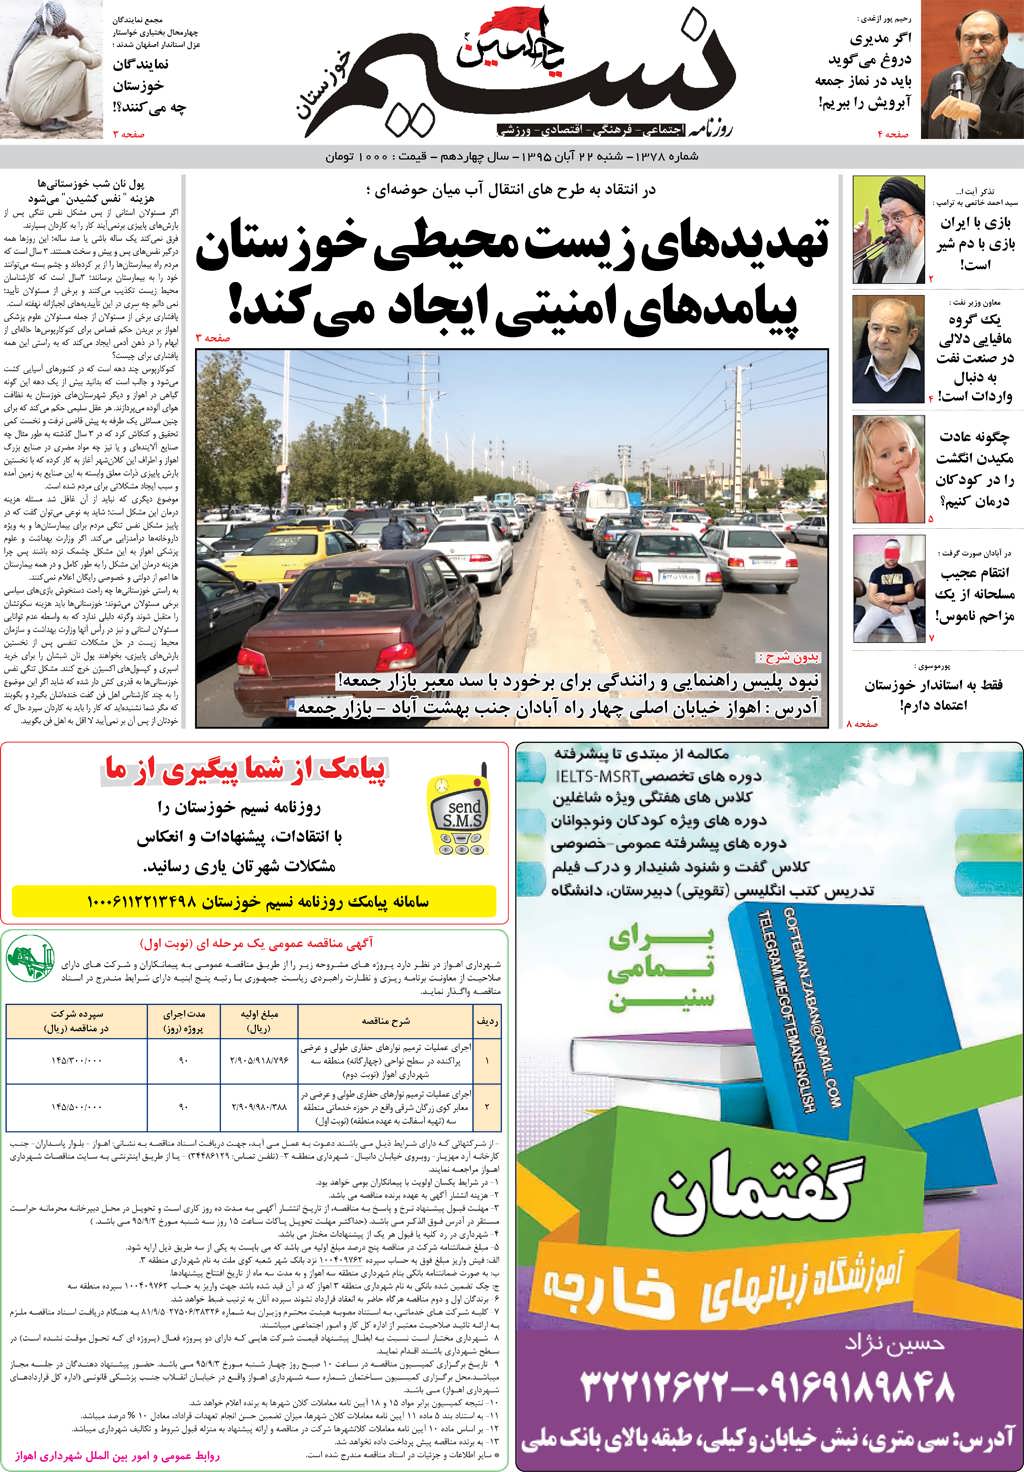 صفحه اصلی روزنامه نسیم شماره 1378